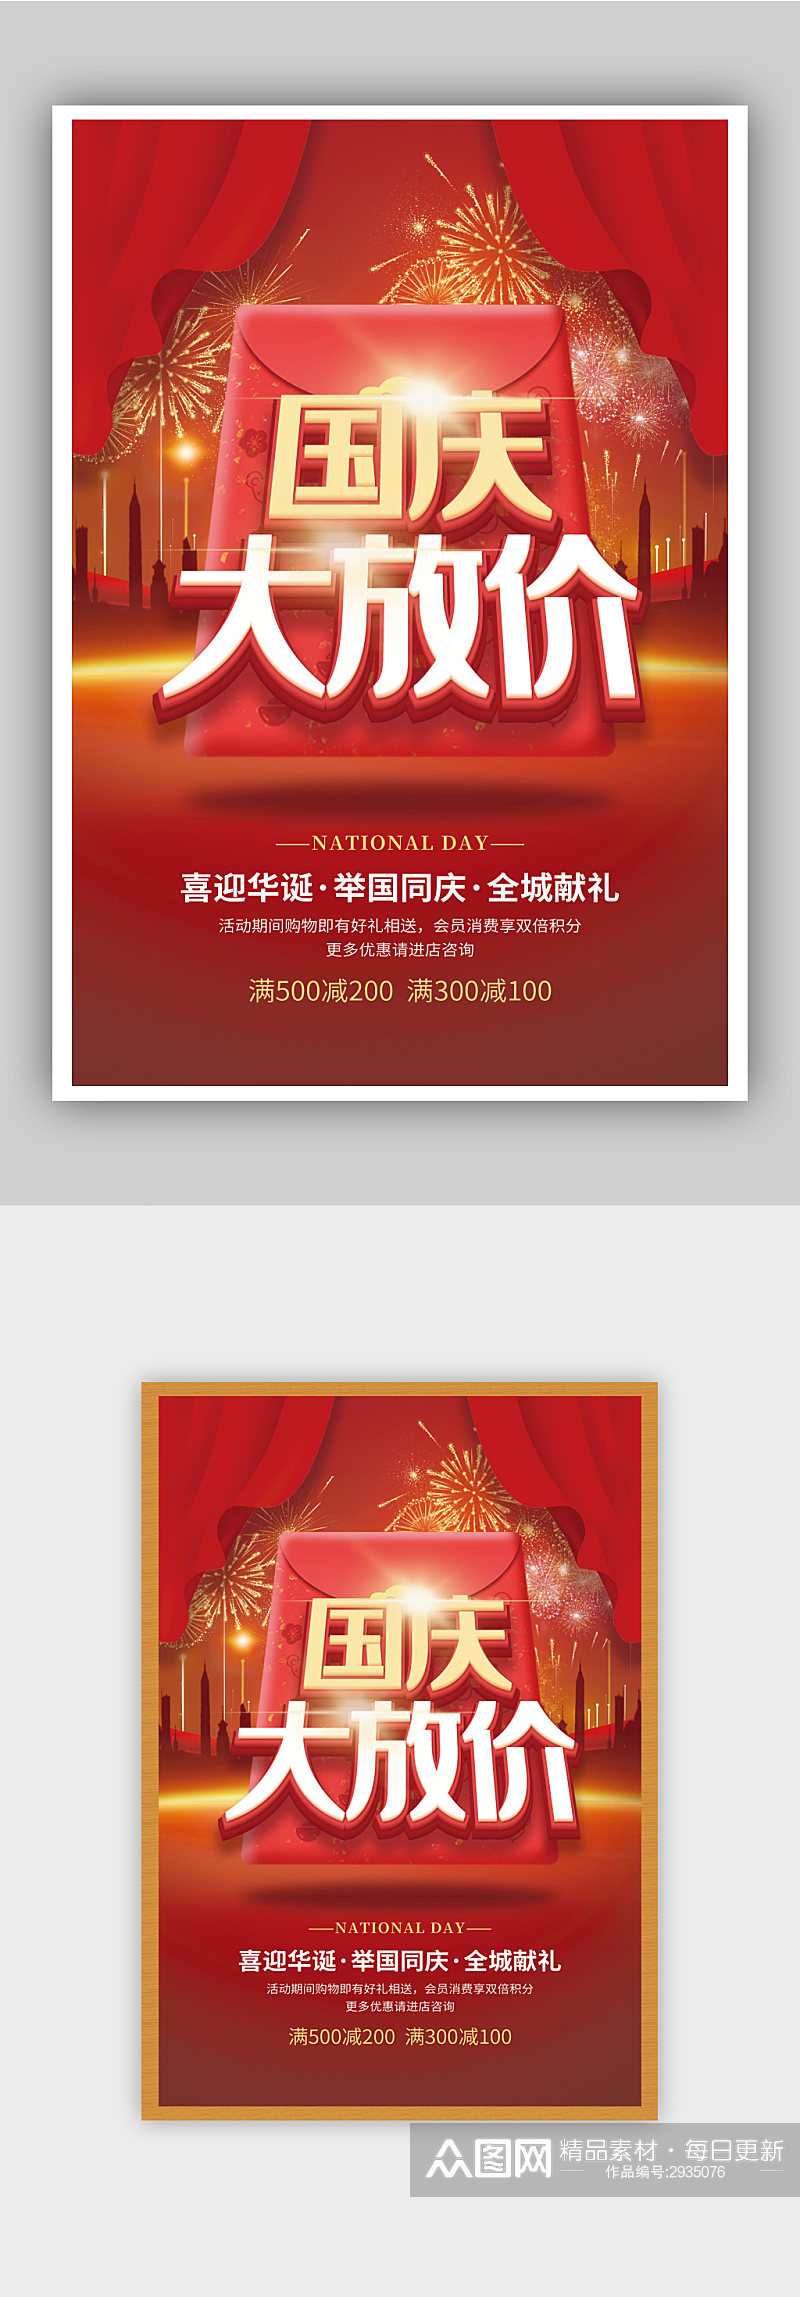 红色国庆大放价国庆节促销海报素材